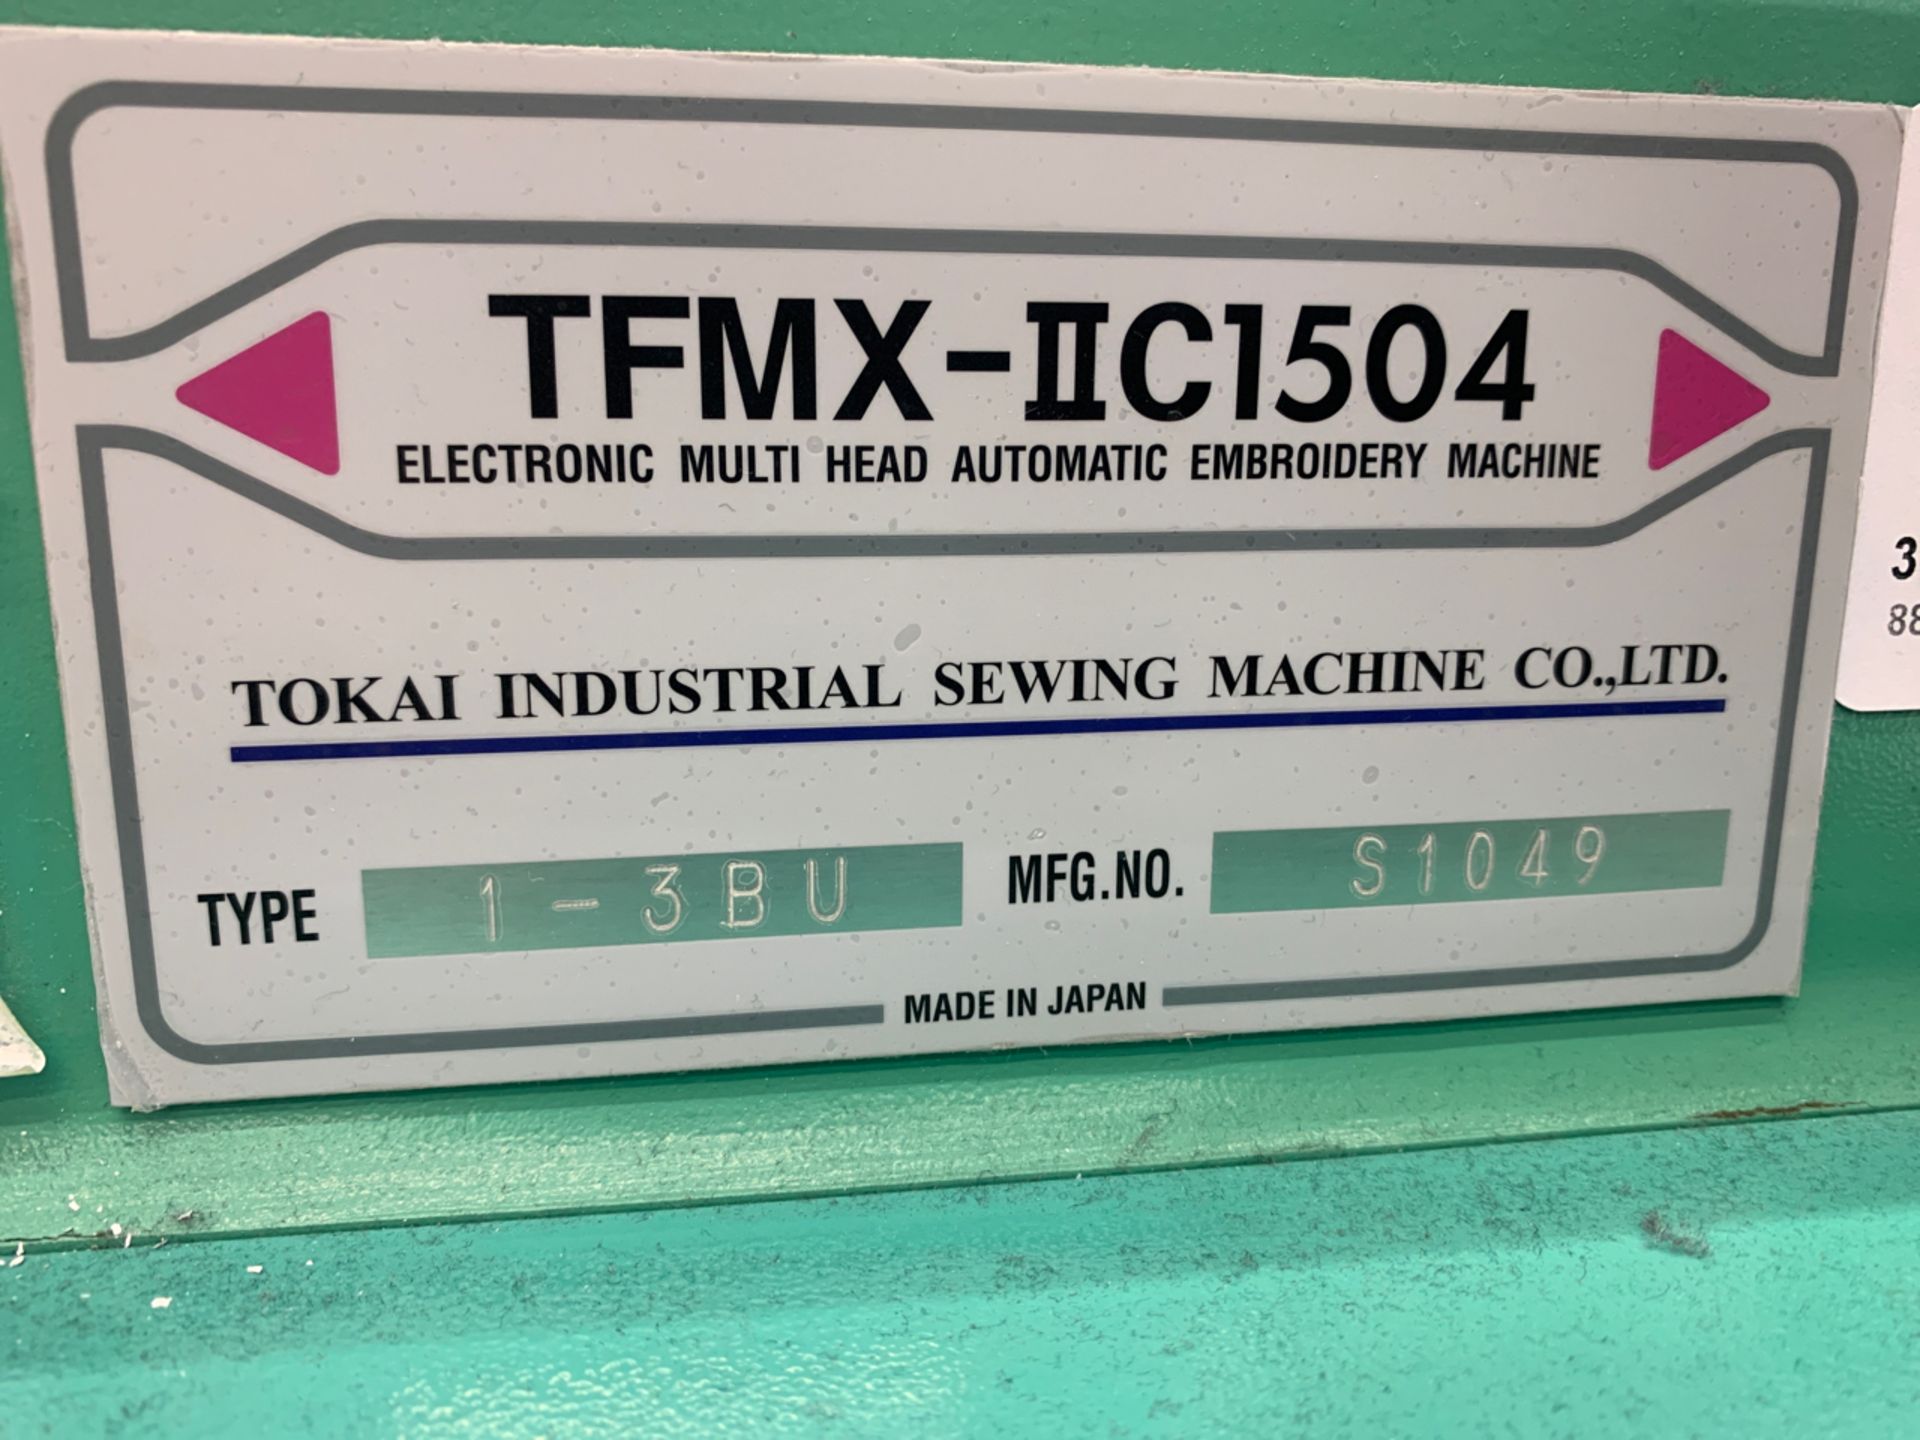 Tajima 4-Head Embroidery Machine TFMX-IIC1504 - Image 6 of 12